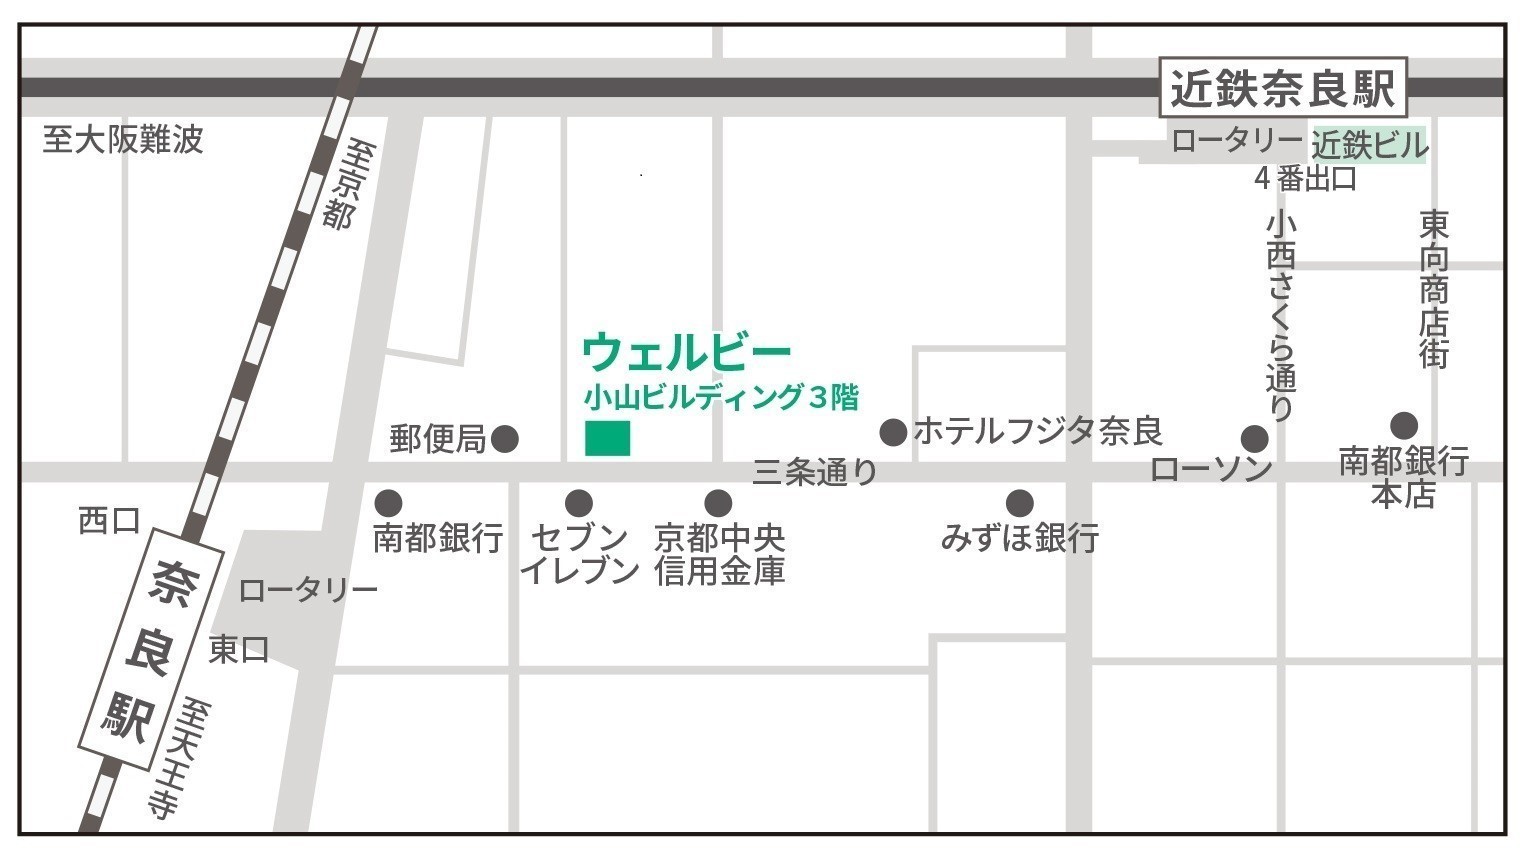 奈良センター地図